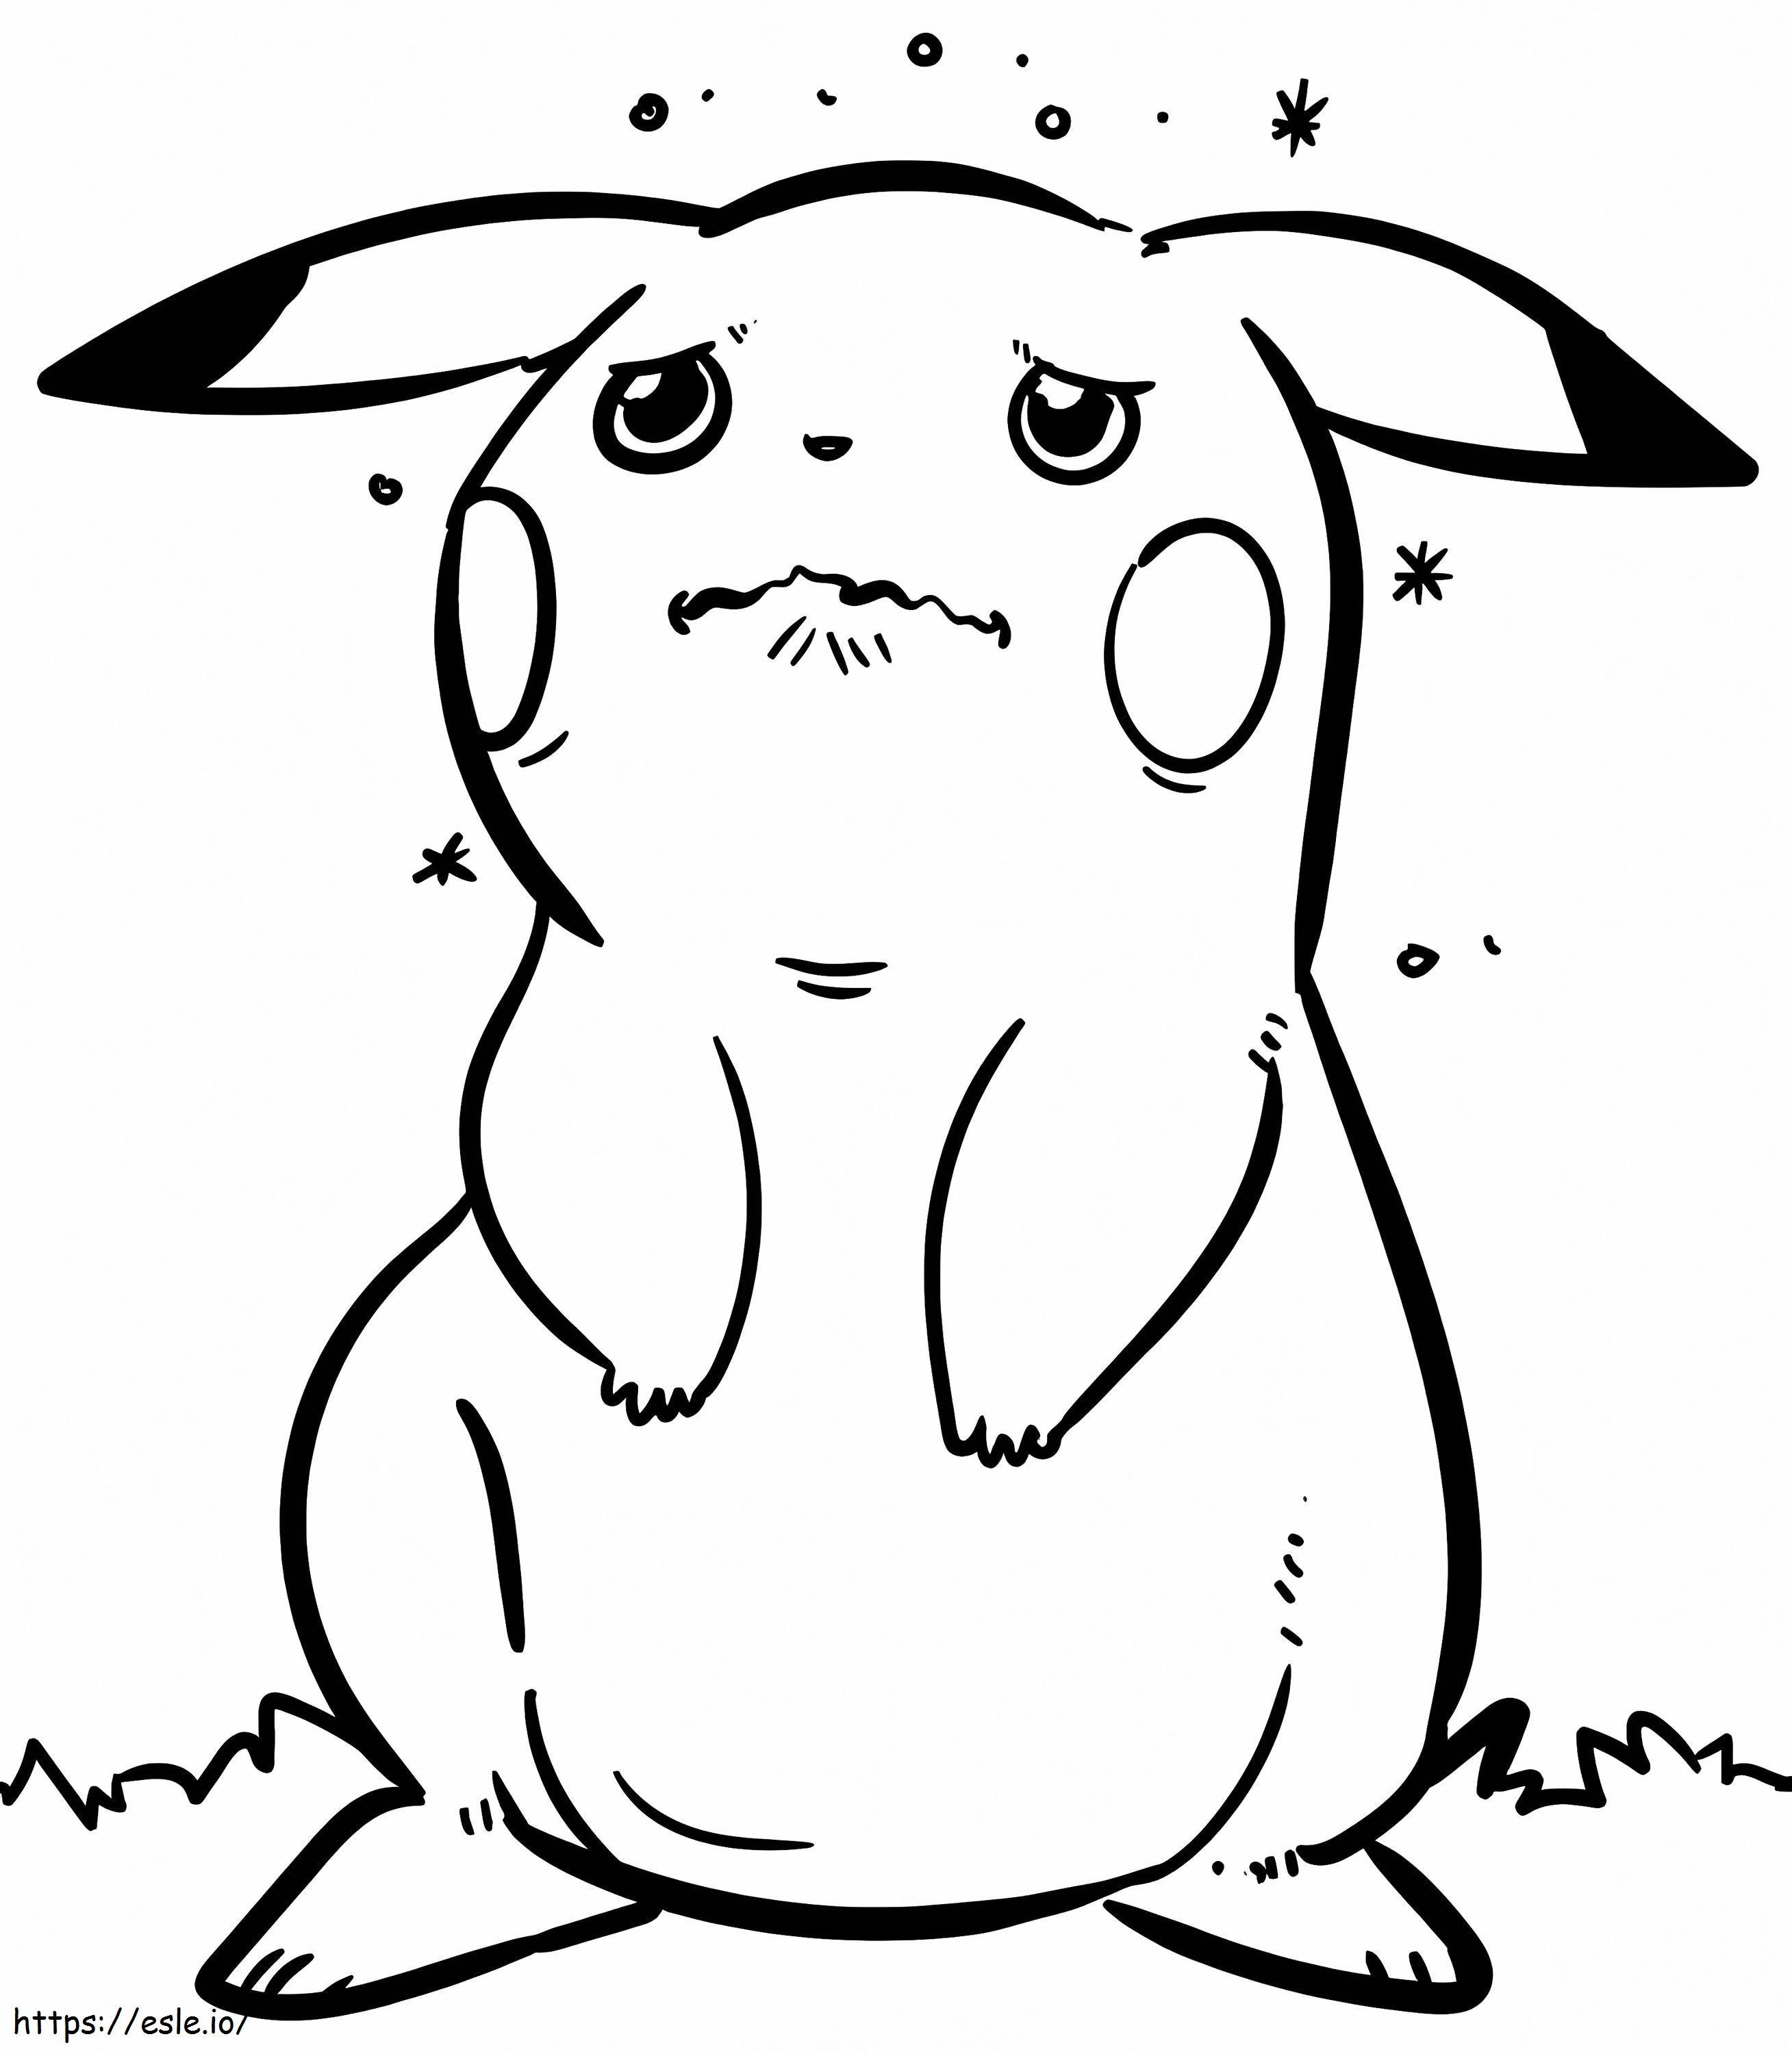 Trauriges Pikachu ausmalbilder